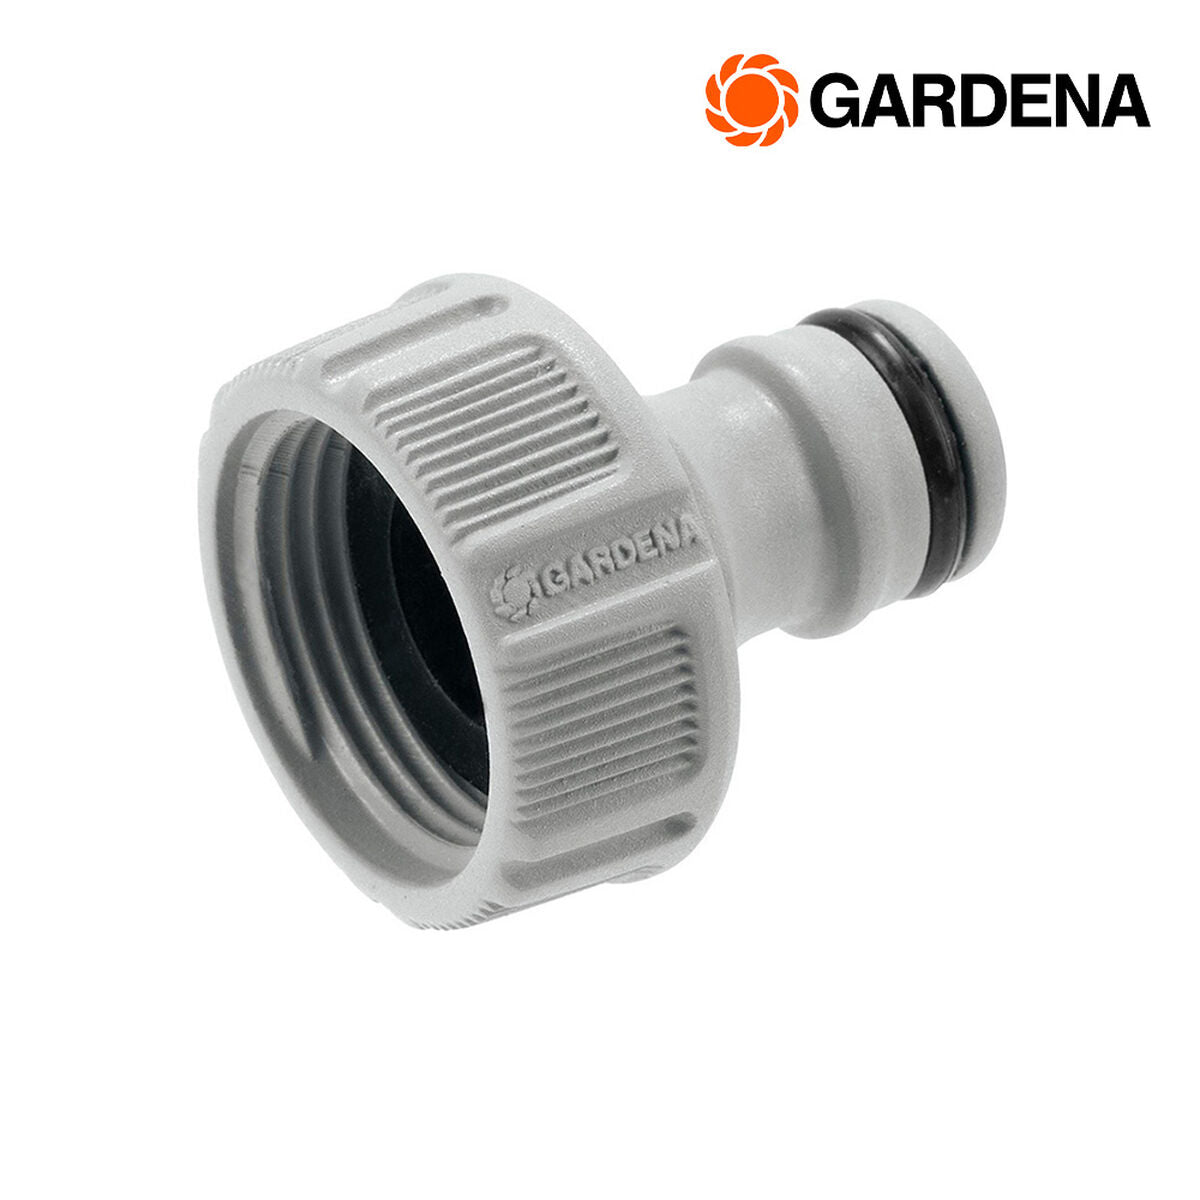 Hose Gardena 18221-20 Adaptador Macho Plug 3/4 "